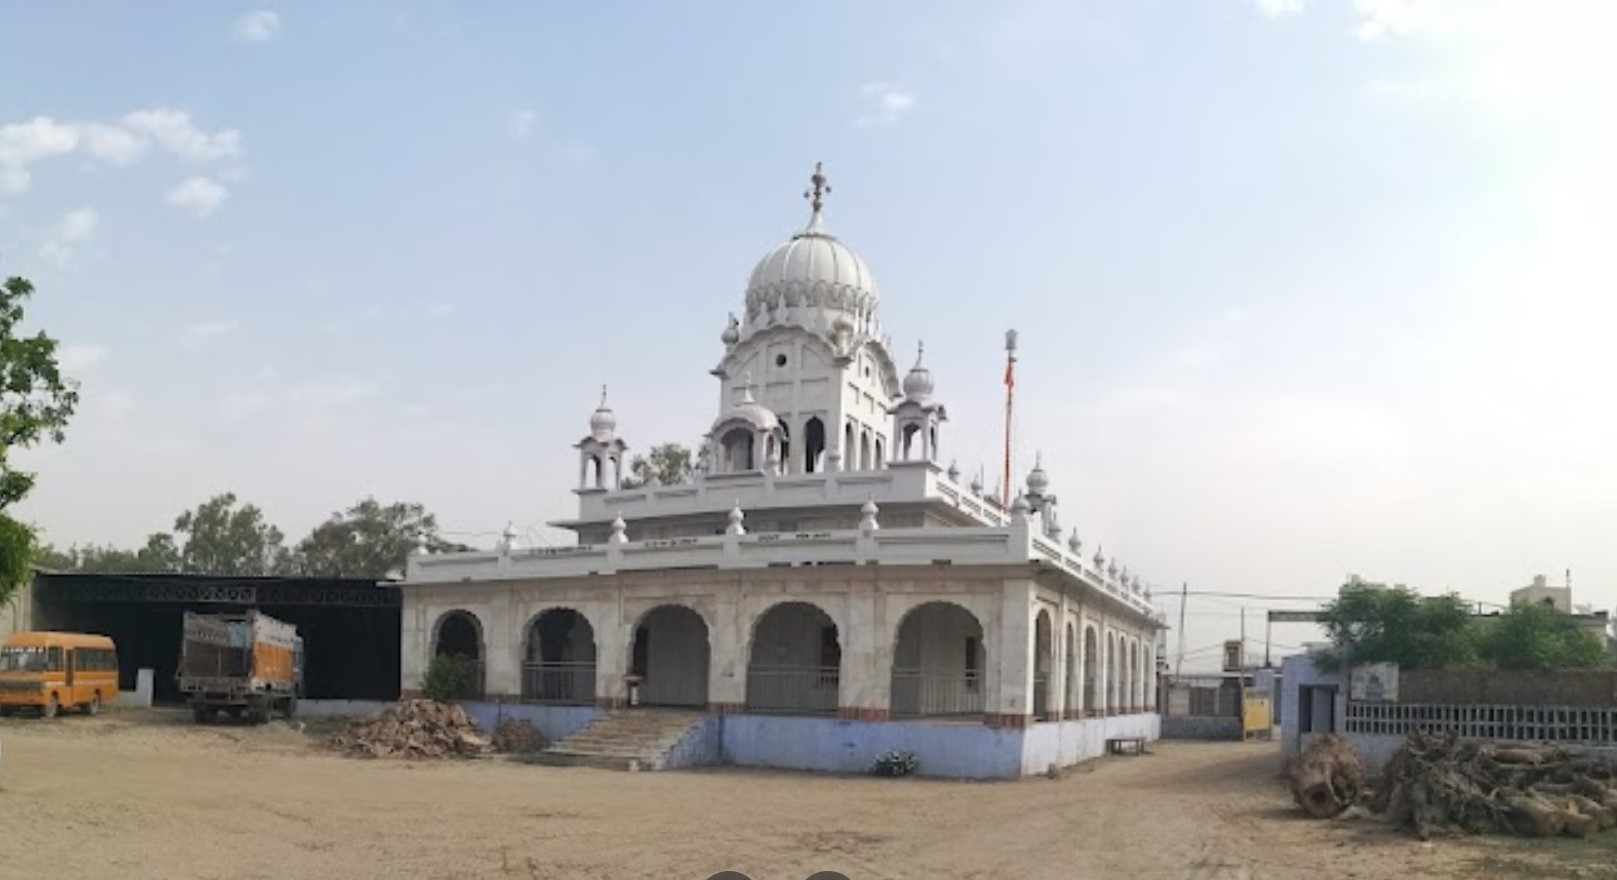 Gurudwara Sri Bhandaraa Sahib, Ramdaas